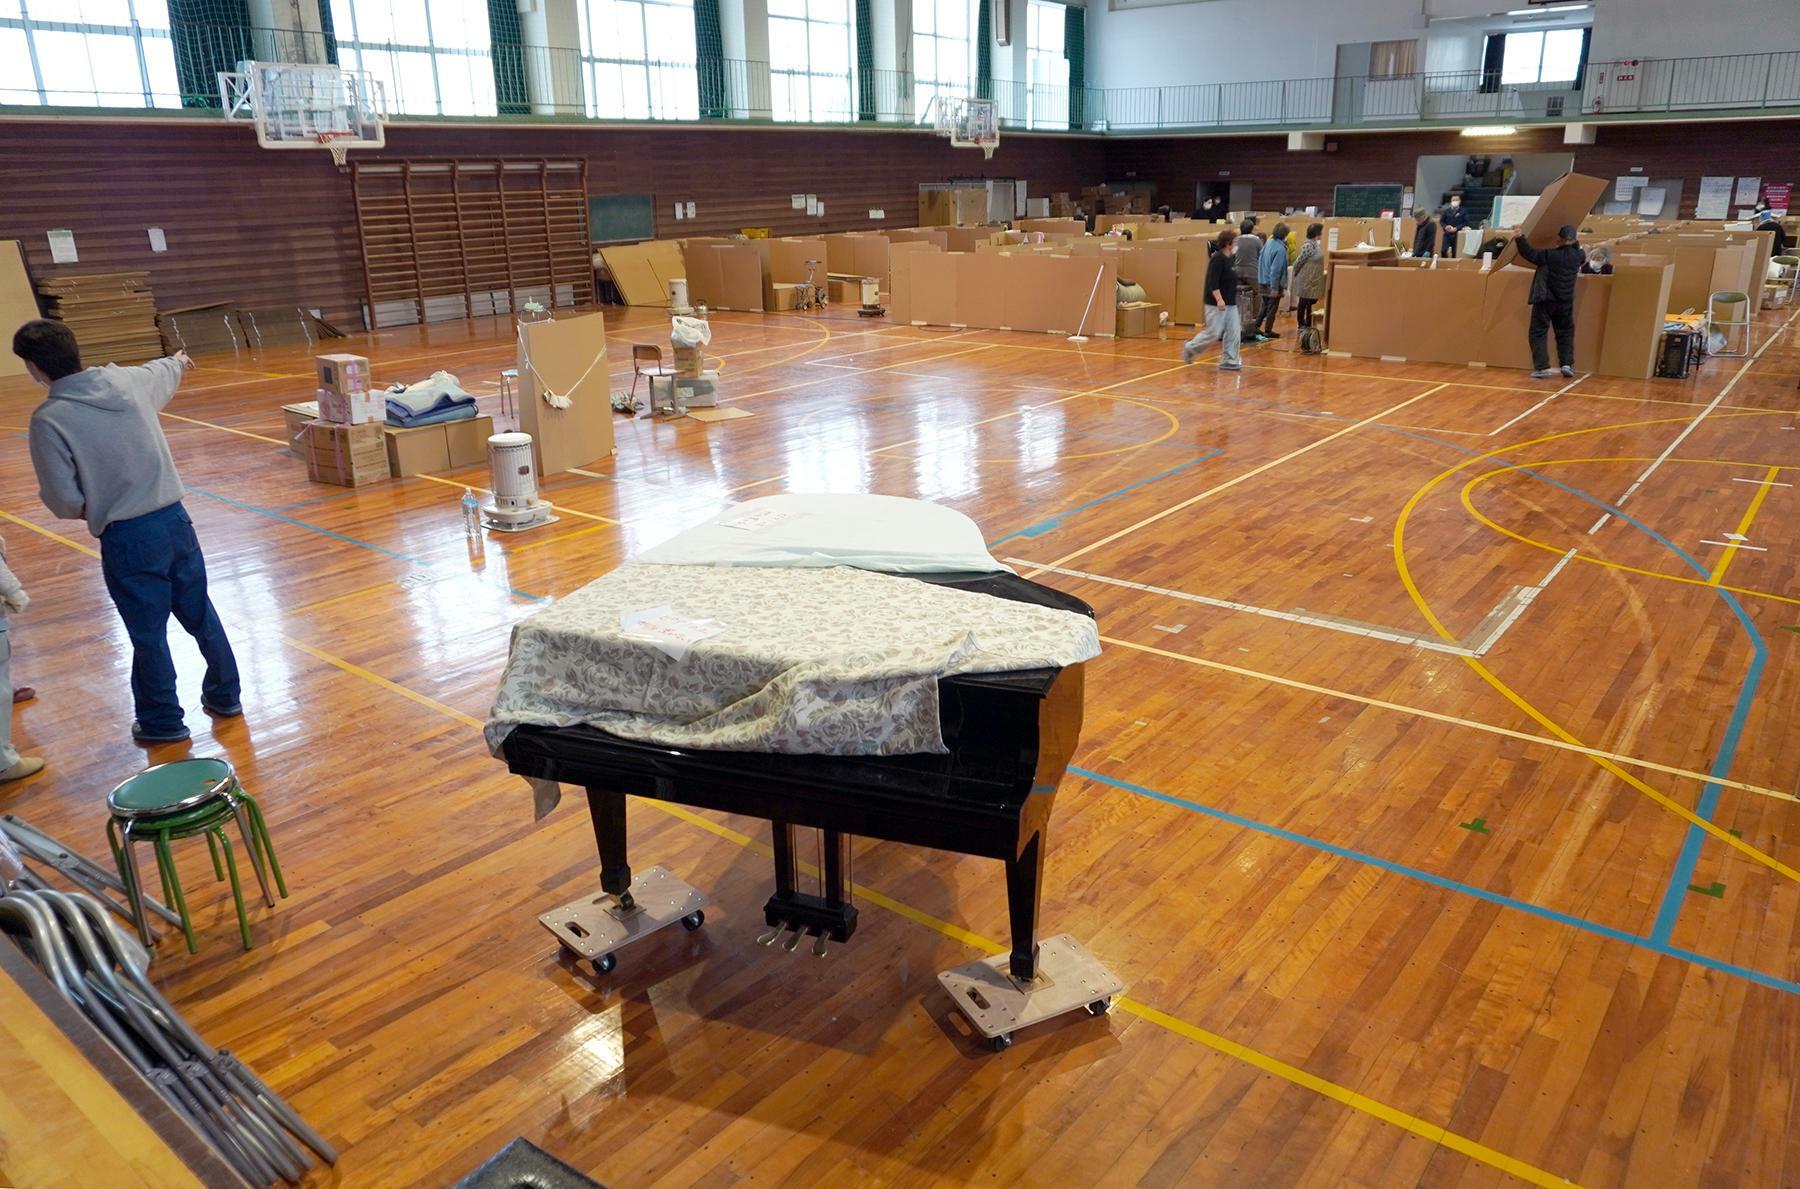 松波中学校の体育館では、小中学校の卒業式のために段ボールの避難所スペースを縮小し、舞台側にピアノなどを置く作業が行われていた＝3月3日、筆者撮影